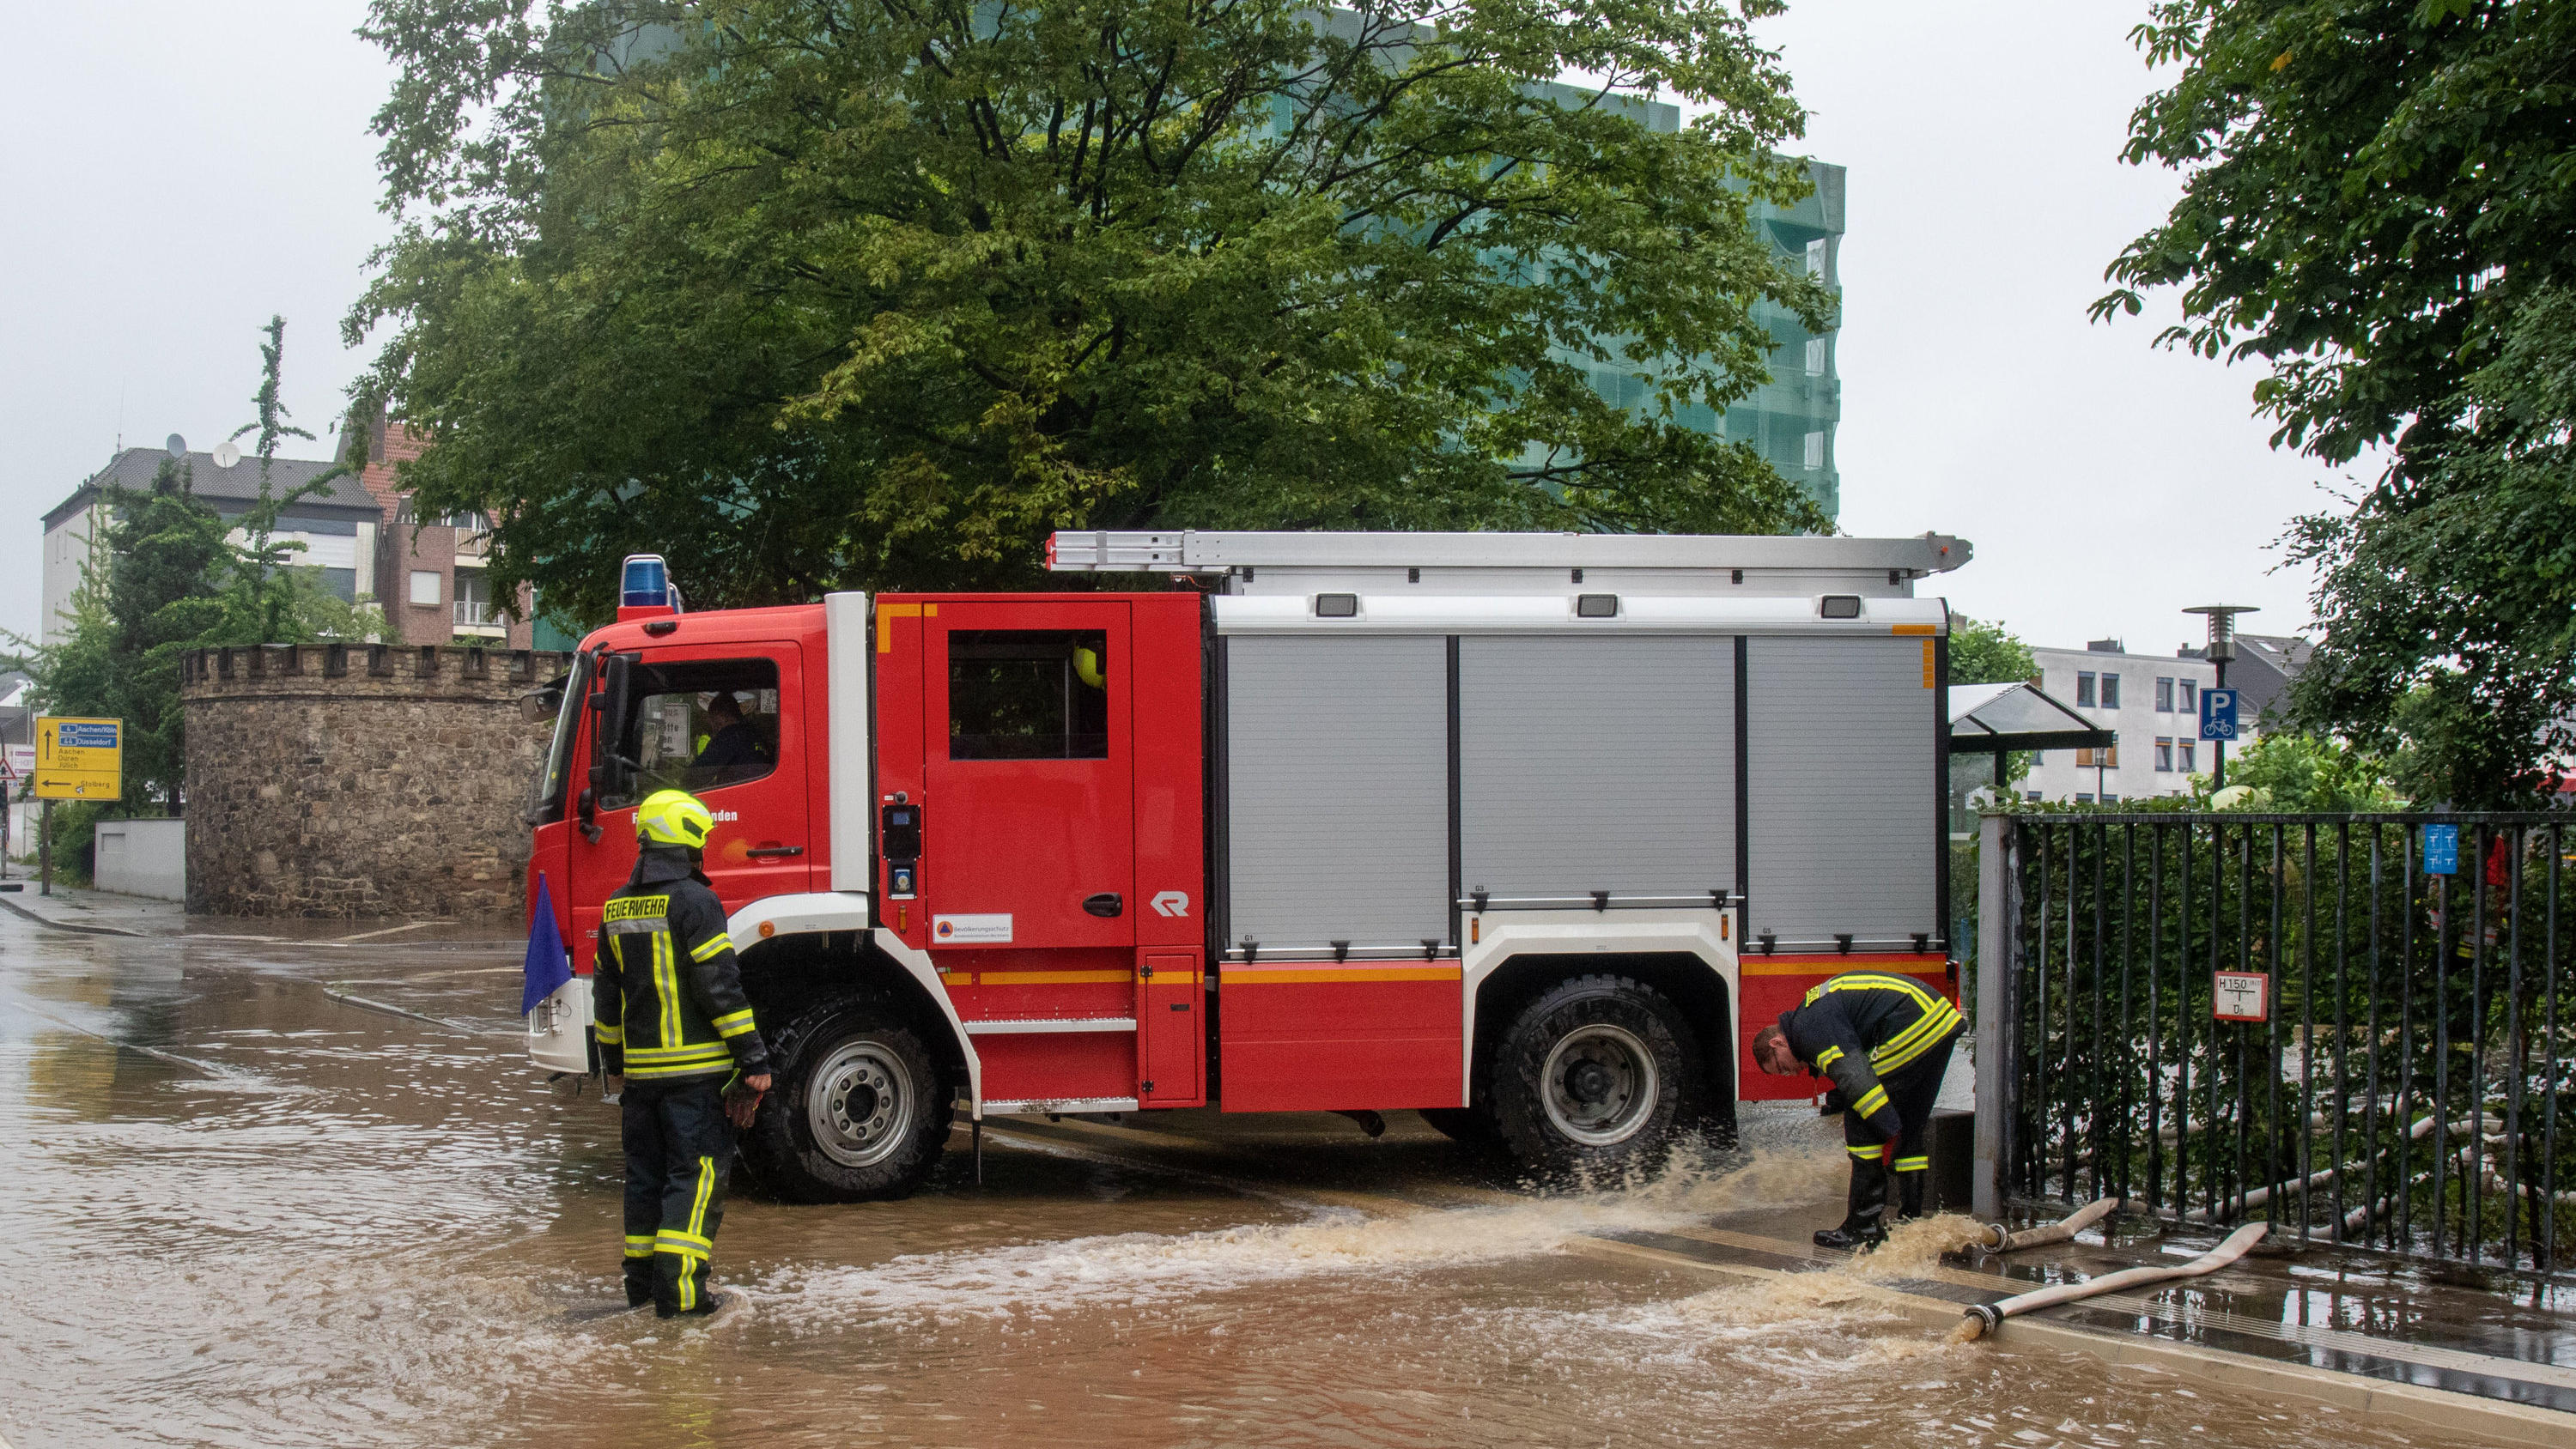 15.07.2021, Nordrhein-Westfalen, Eschweiler: Ein Feuerwehrwagen steht am Seiteneingang des Krankenhauses. Wegen der Hochwasserlage wird das Krankenhaus in Eschweiler bei Aachen evakuiert. Intensivpatienten würden per Rettungshubschrauber vom Dach abg